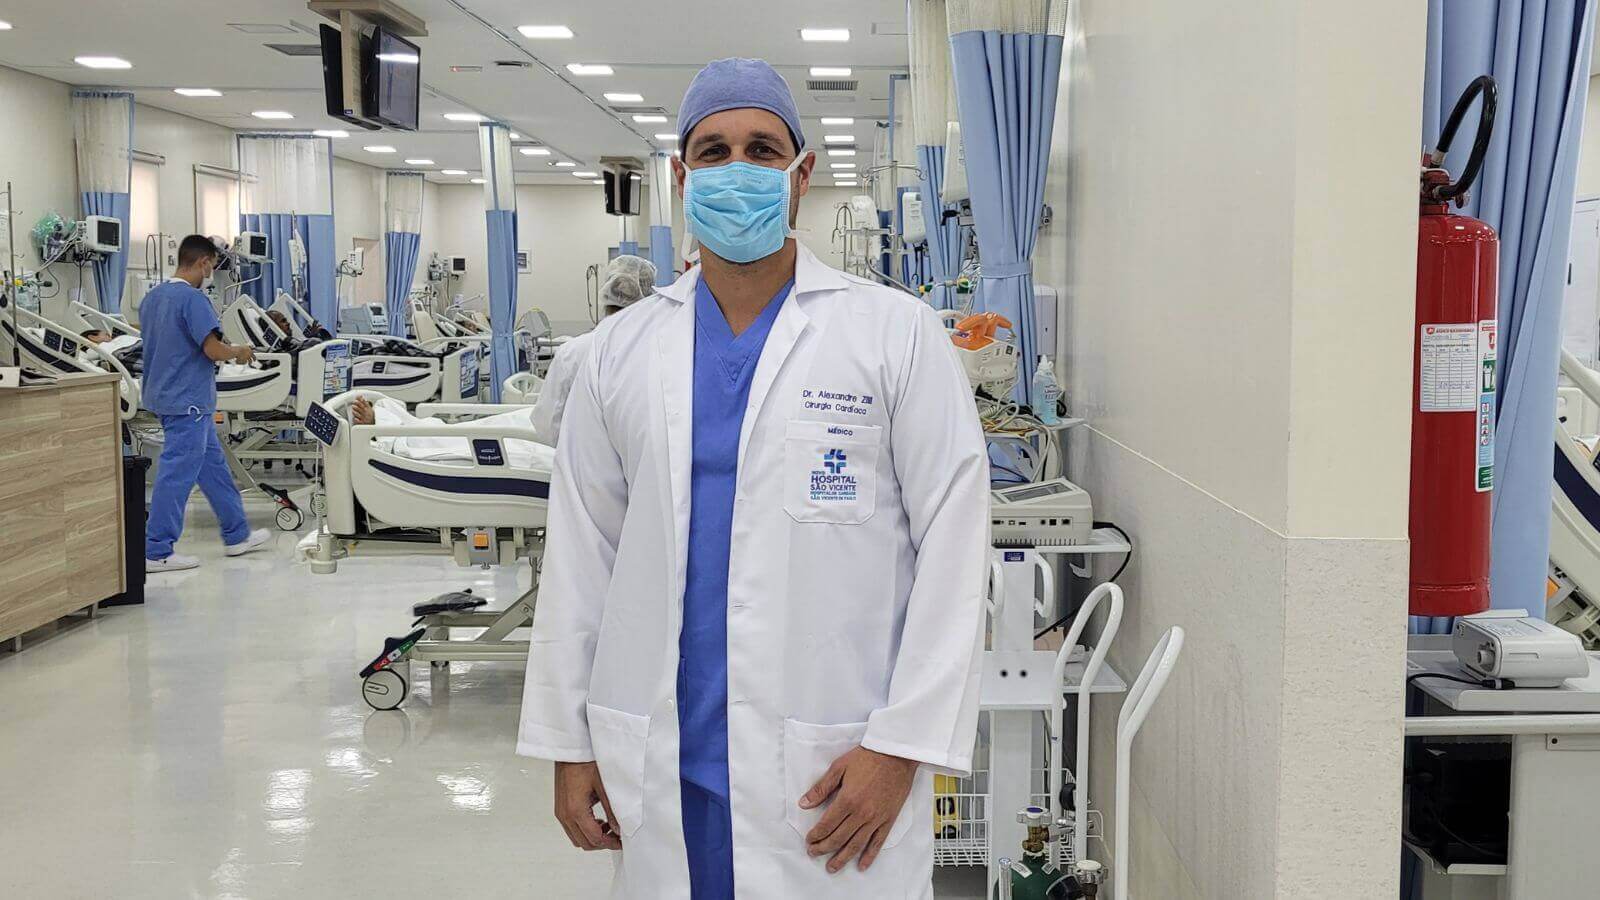 Cirurgião do Hospital São Vicente participa de treinamento de cirurgias robóticas em Ohio